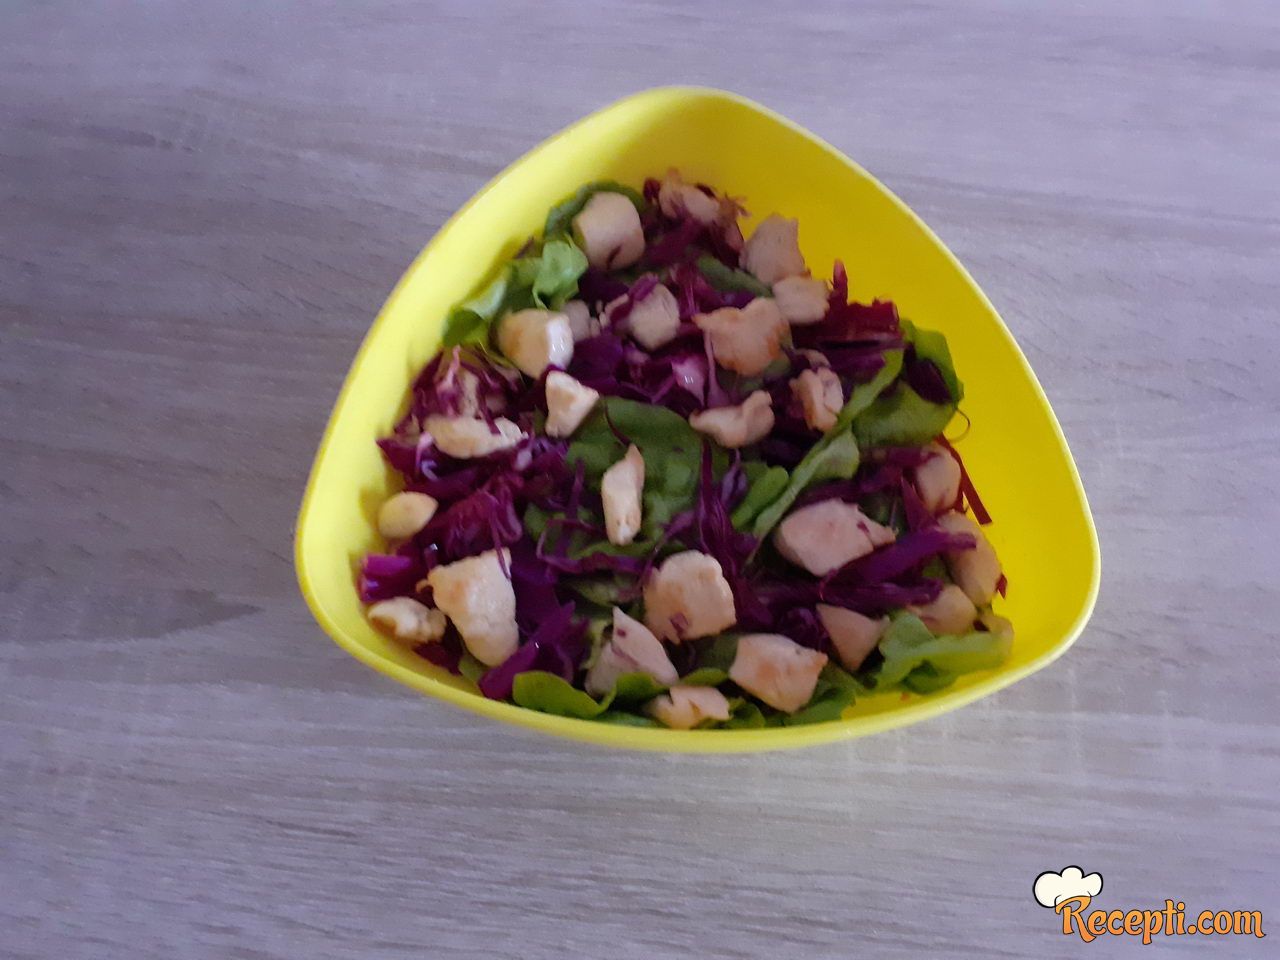 Pileća salata (14)